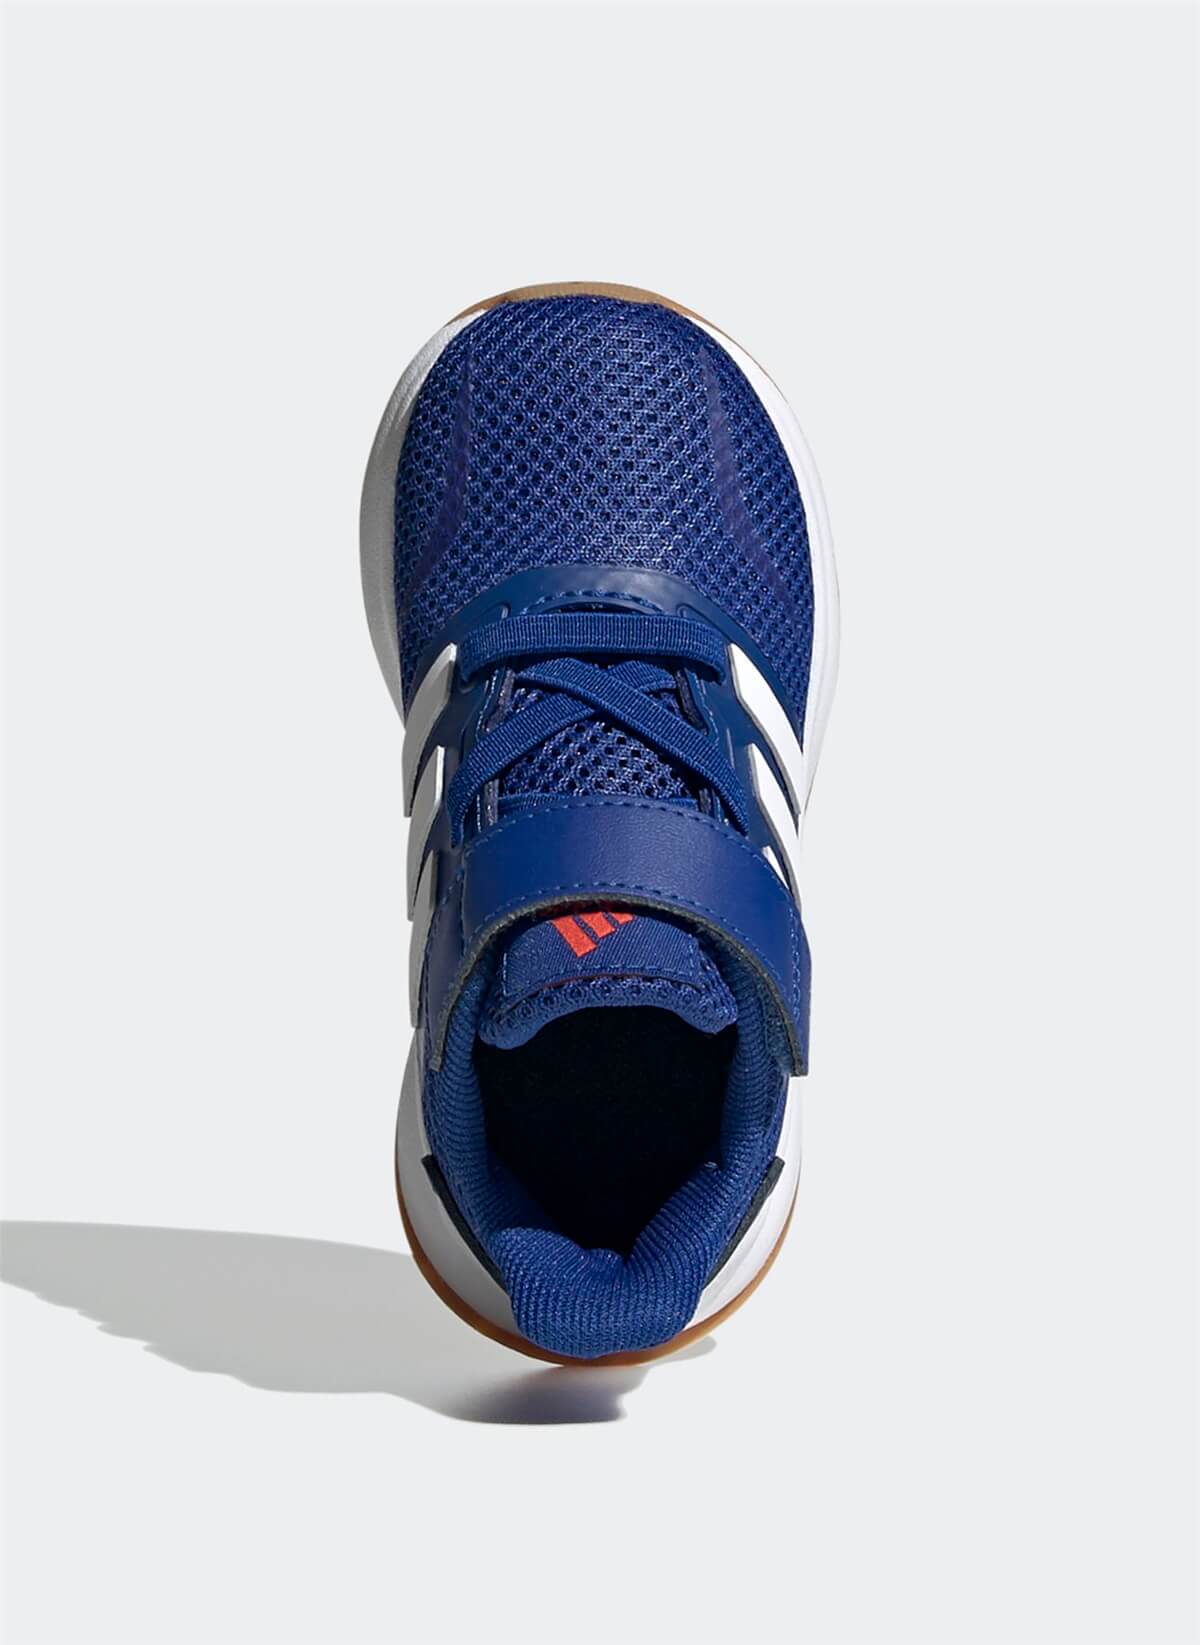 Adidas FW5149 RUNFALCON I Erkek Çocuk Yürüyüş Ayakkabısı